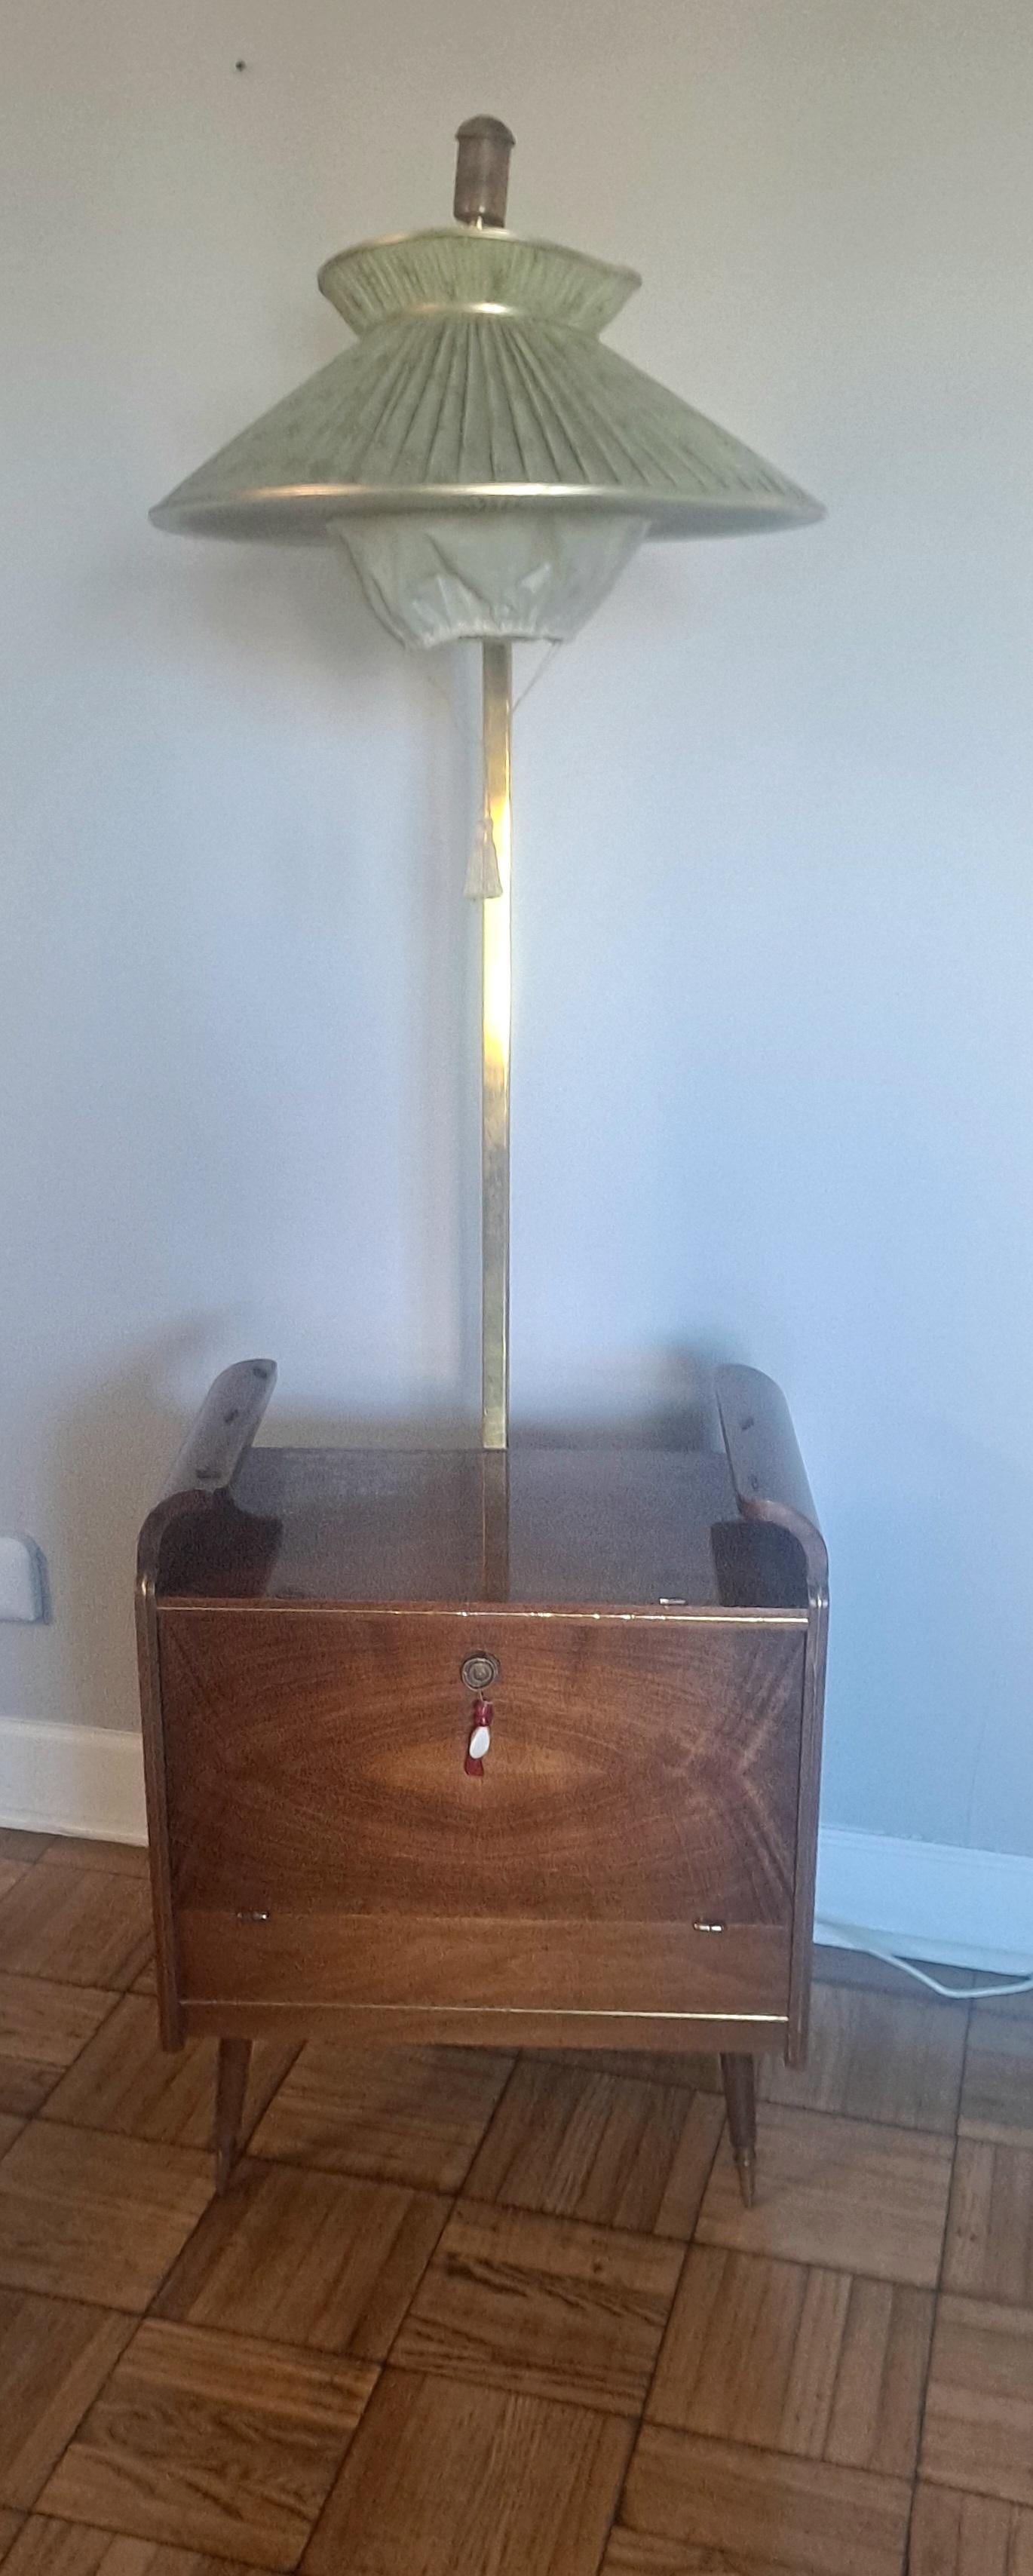  Italienische Stehlampe aus den 1950er Jahren - trockene Bar. Dry bar haben 2 Glühbirnen und  Wenn sich die Tür schließt, schaltet sich der Schalter automatisch aus. Der Schalter für die Stehlampe befindet sich an der Rückseite des Bodens. Die